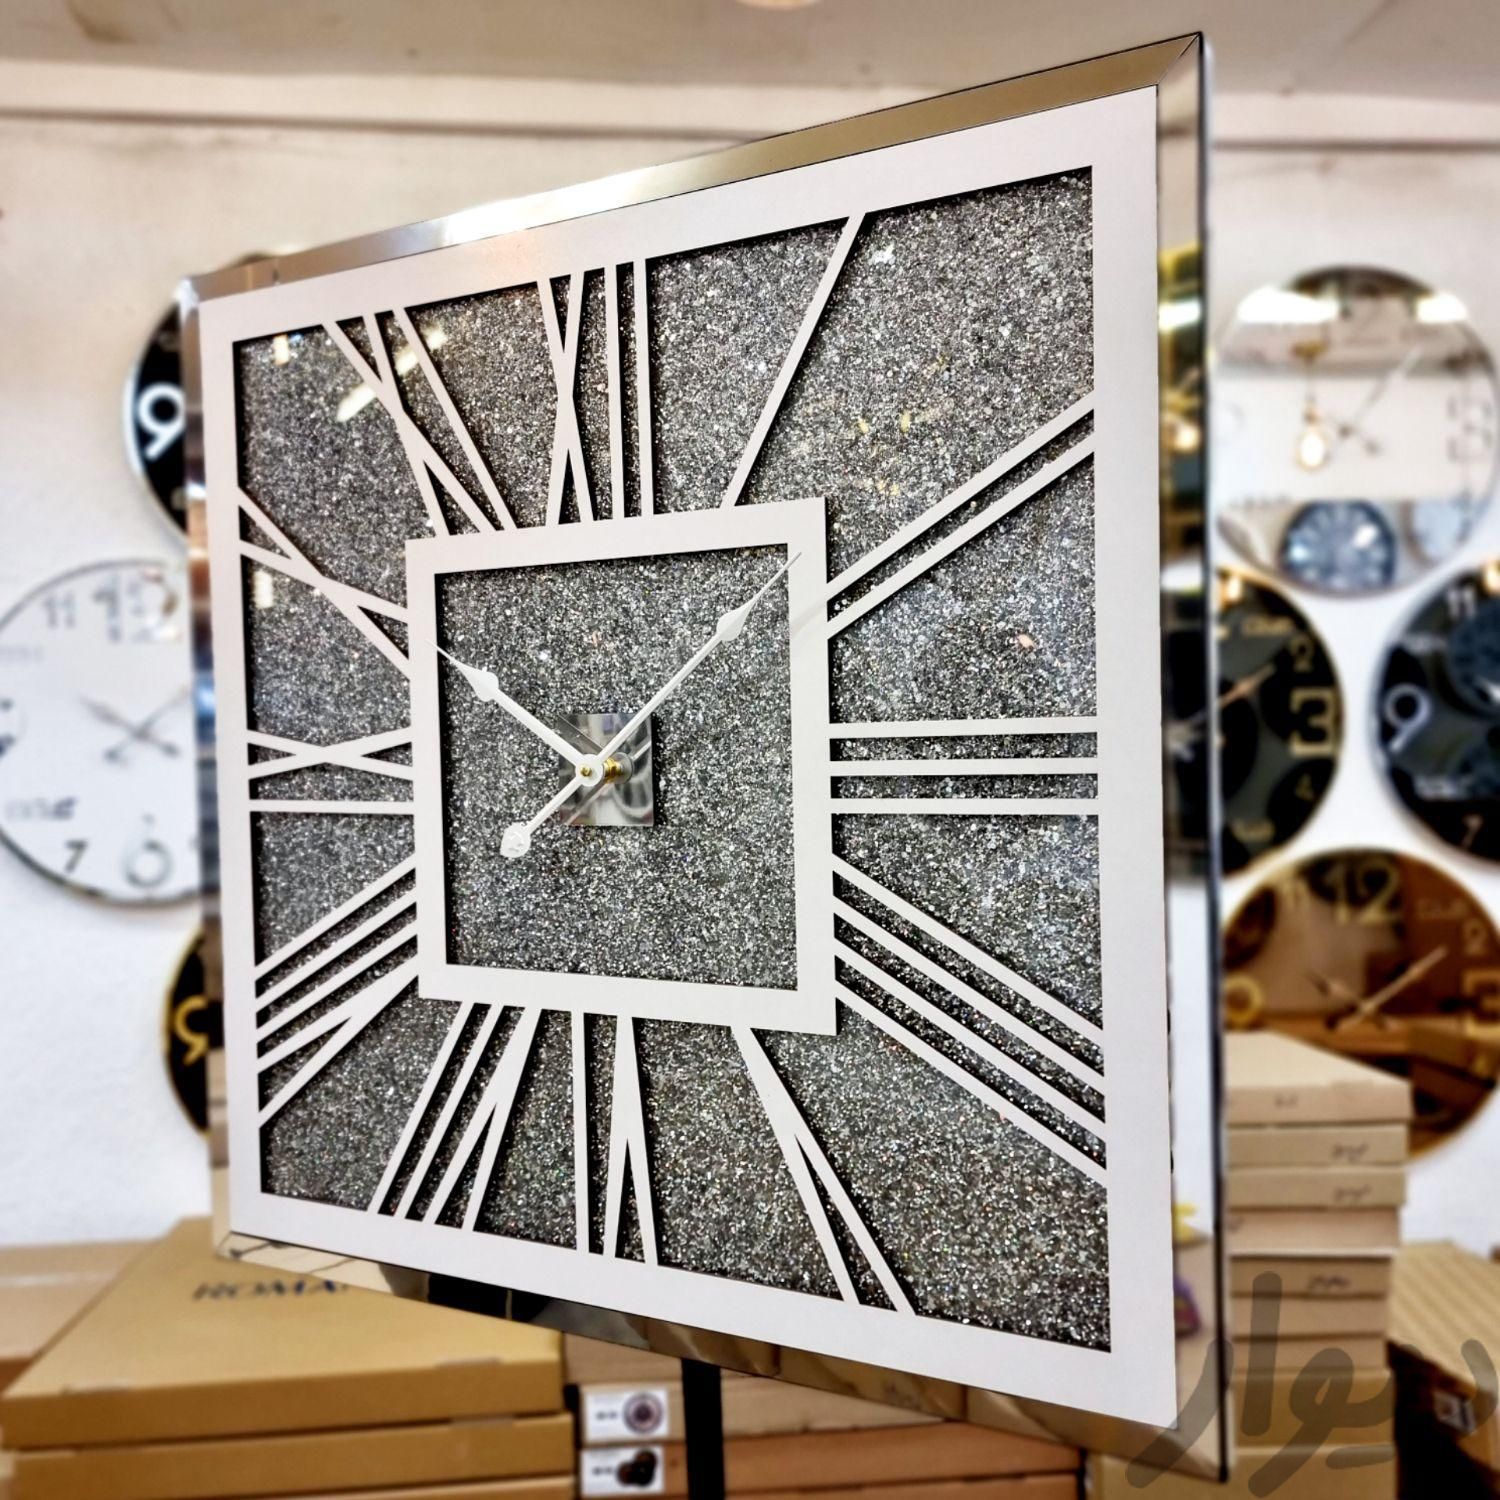 ساعت دیواری آینه ای مدل شاین مربع سیلور کد۱۰۳|ساعت دیواری و تزئینی|تهران, شهید دستغیب|دیوار